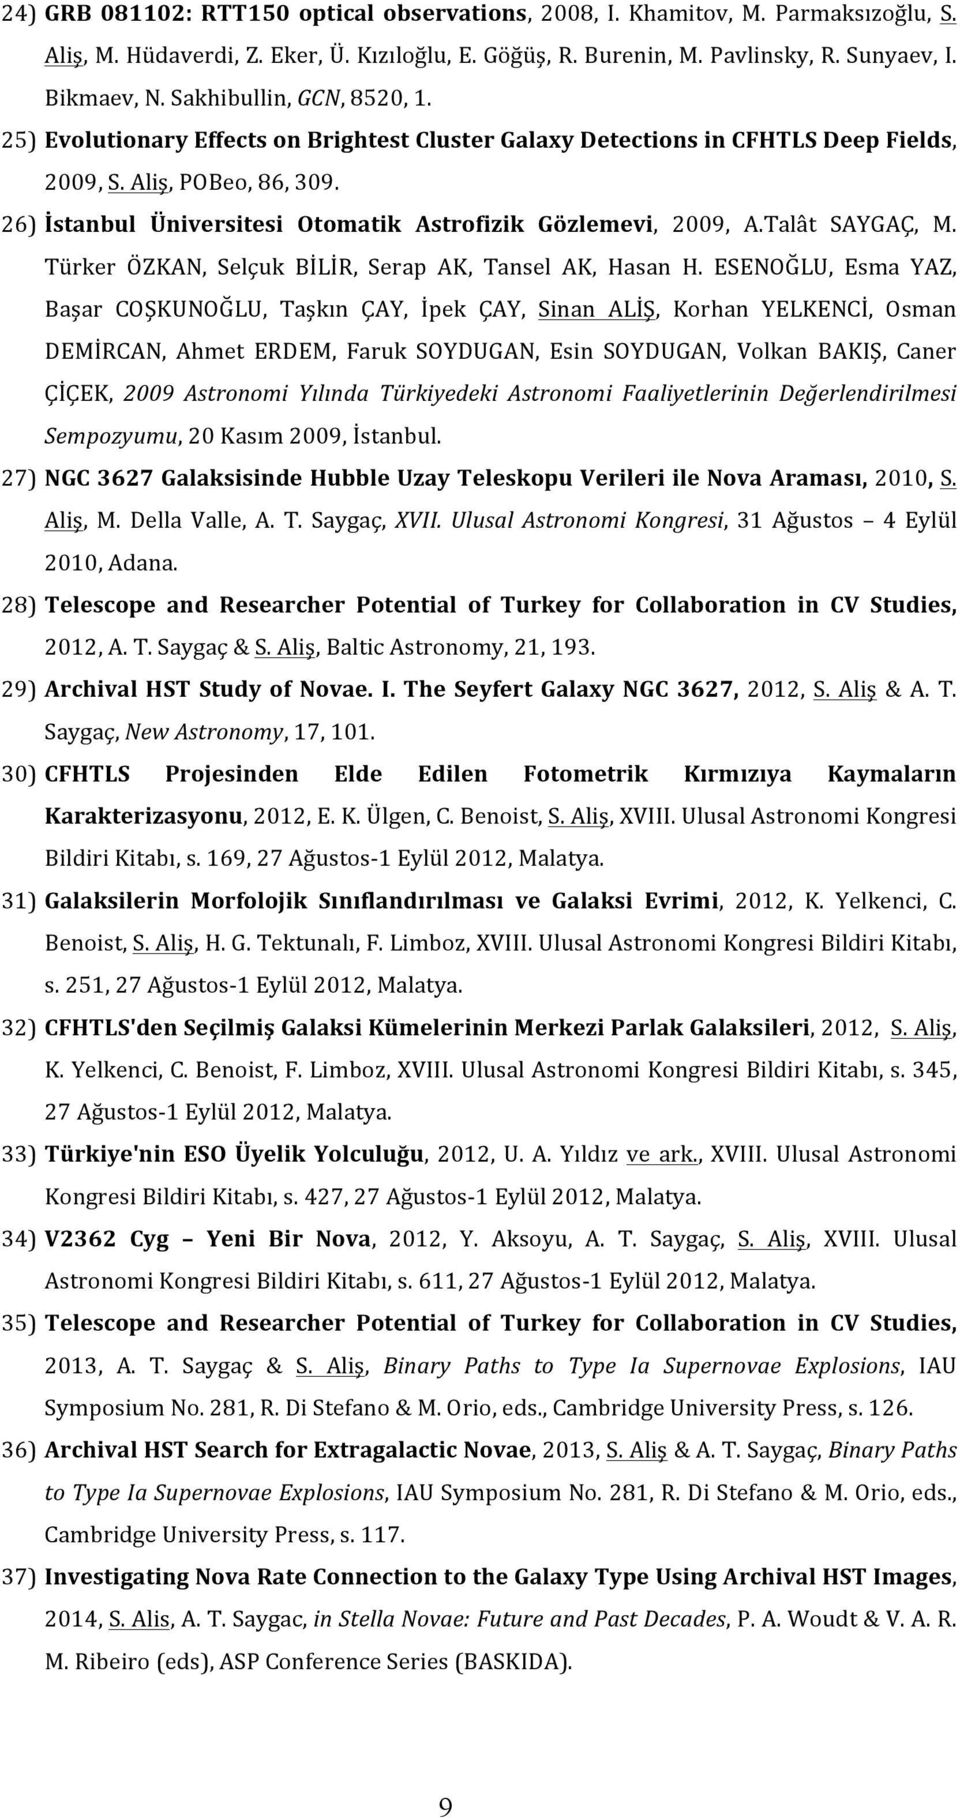 26) İstanbul Üniversitesi Otomatik Astrofizik Gözlemevi, 2009, A.Talât SAYGAÇ, M. Türker ÖZKAN, Selçuk BİLİR, Serap AK, Tansel AK, Hasan H.